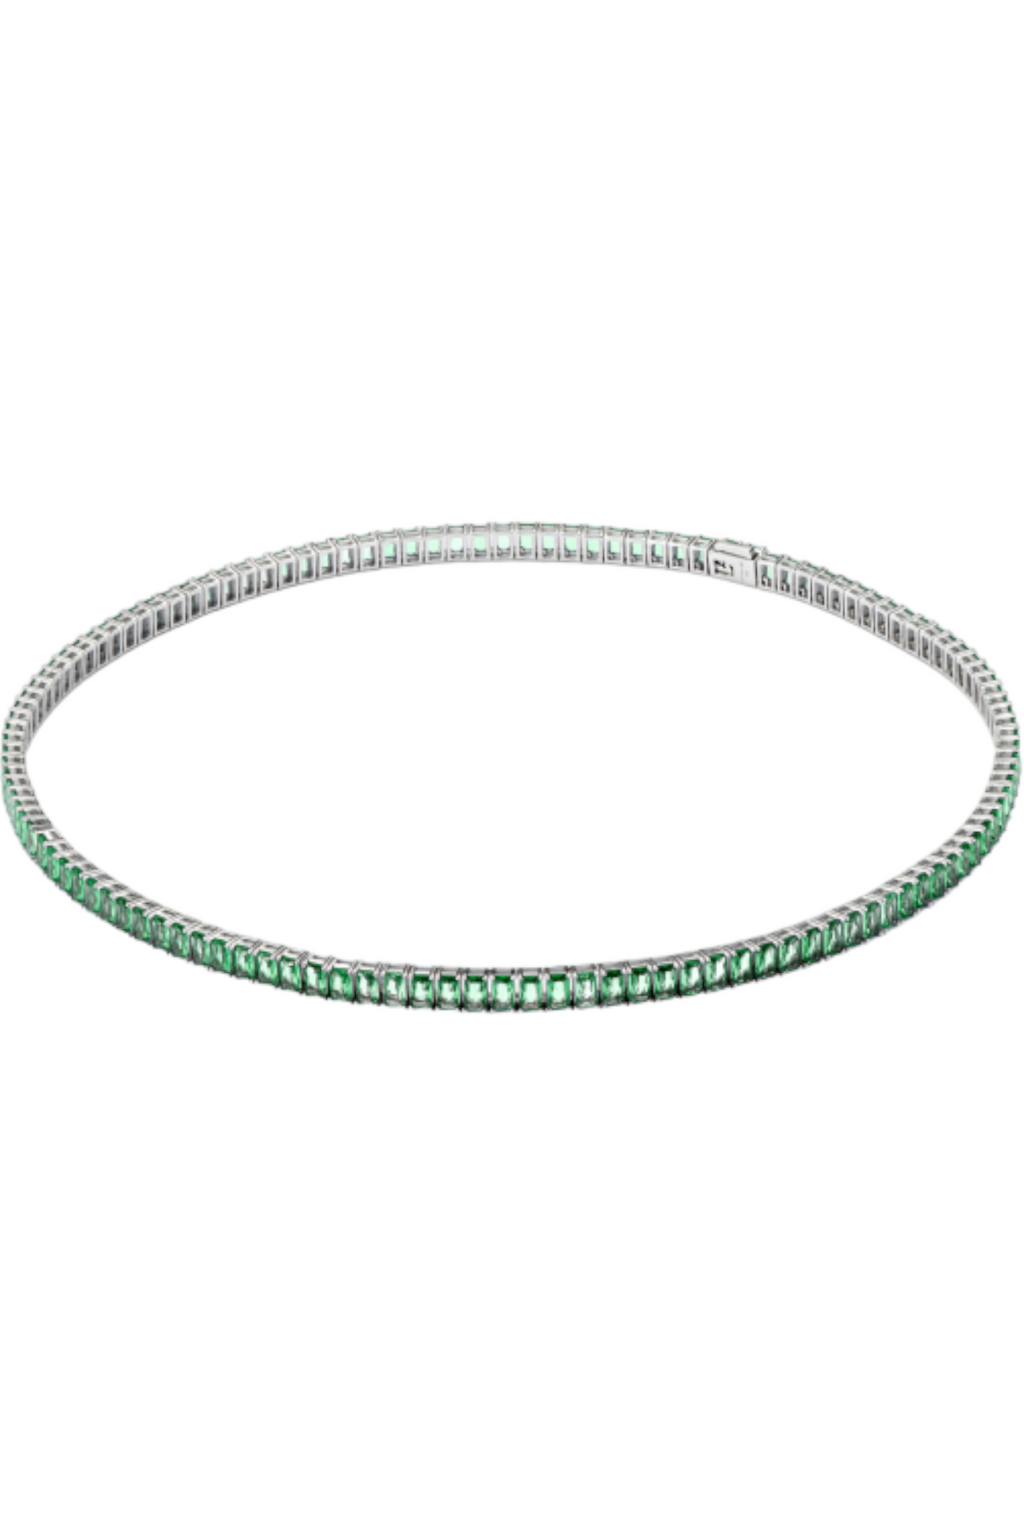 Hatton Labs Emerald Cut Tennis Chain